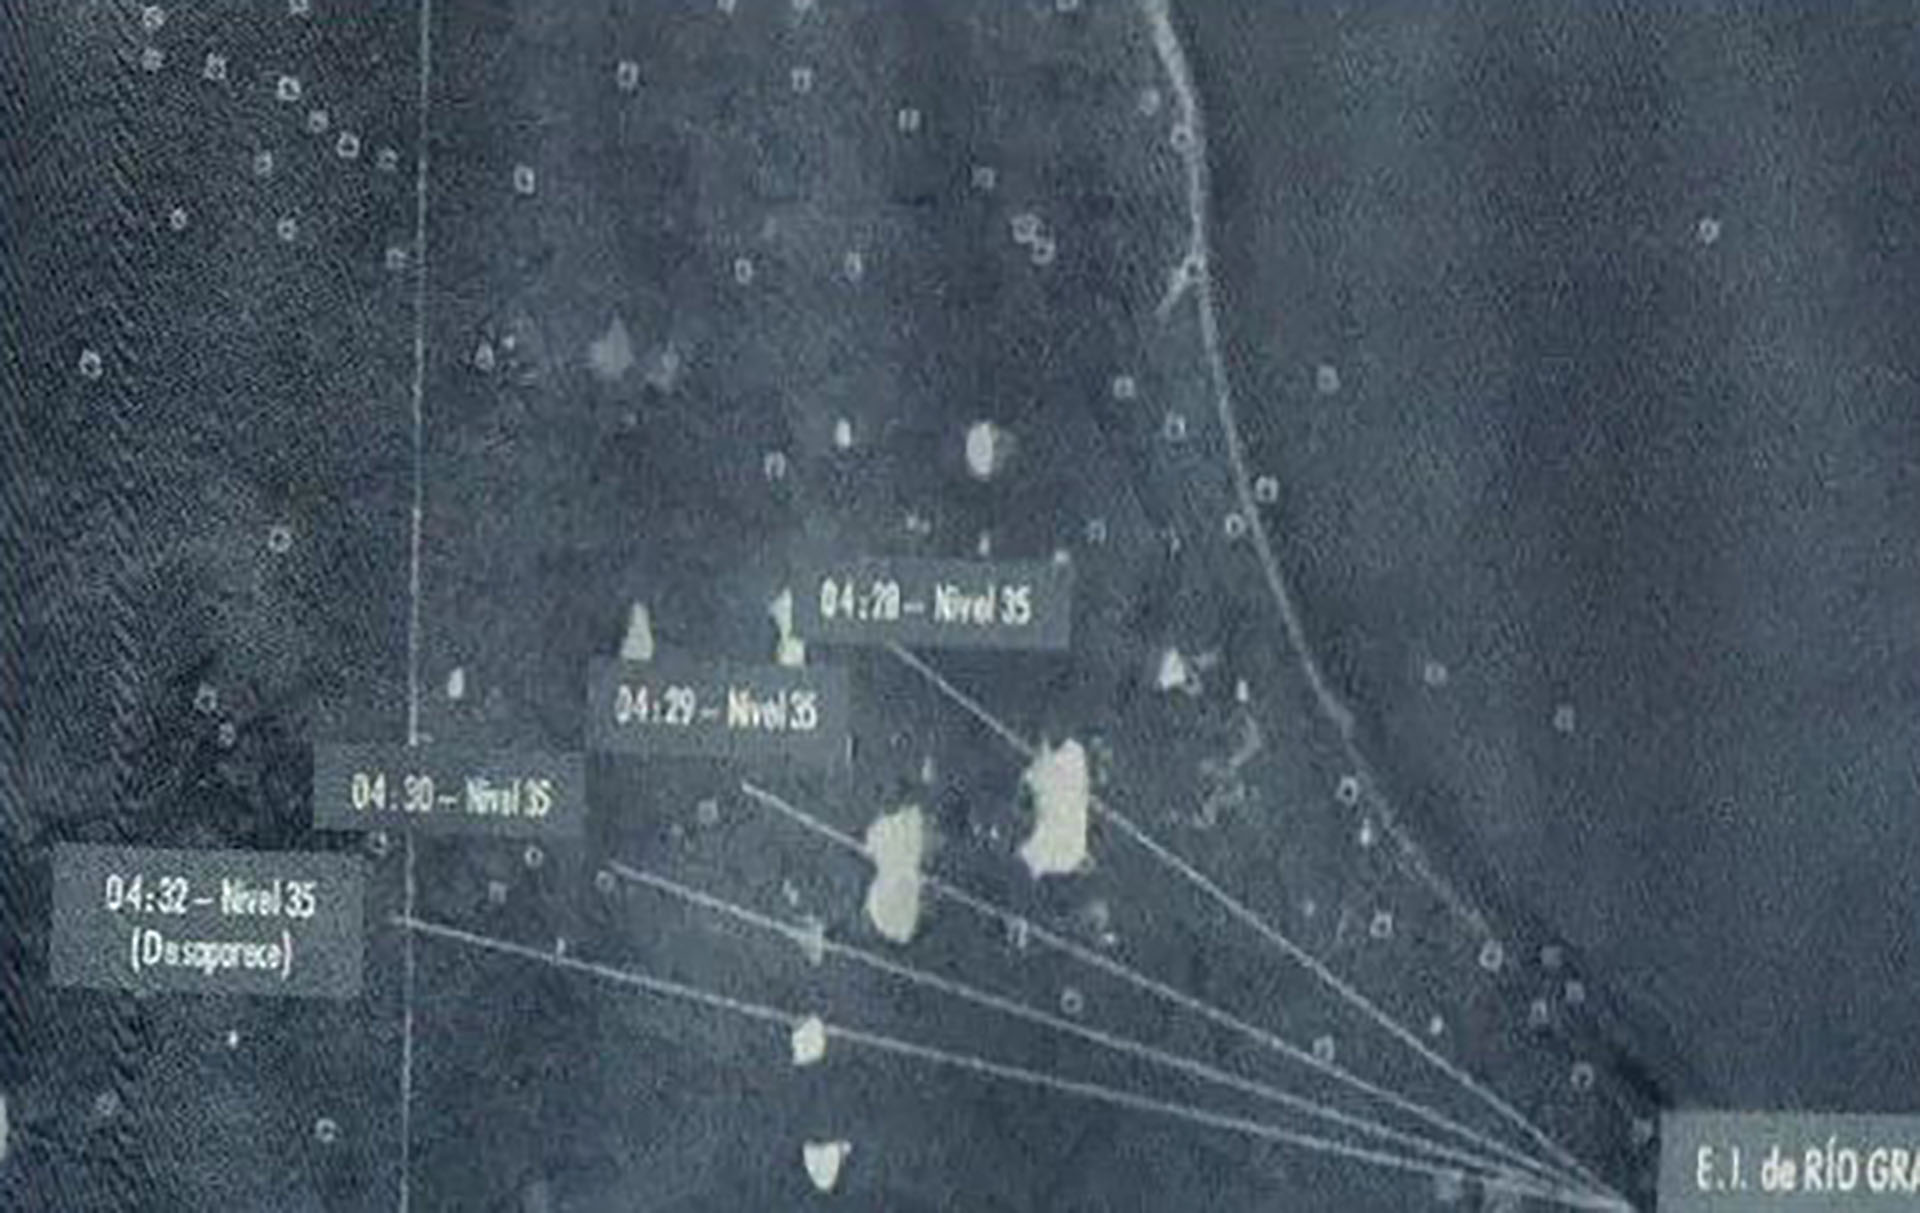 Libro Vigilancia y Control Aéreo en Argentina: la imagen muestra las trazas de los casi cinco minutos que estuvo el Sea King ZA290 en la pantalla del radar. La primera traza ocurre a las 4:28 AM cuando, según la tripulación, tocó tierra para desembarcar al equipo del SAS
